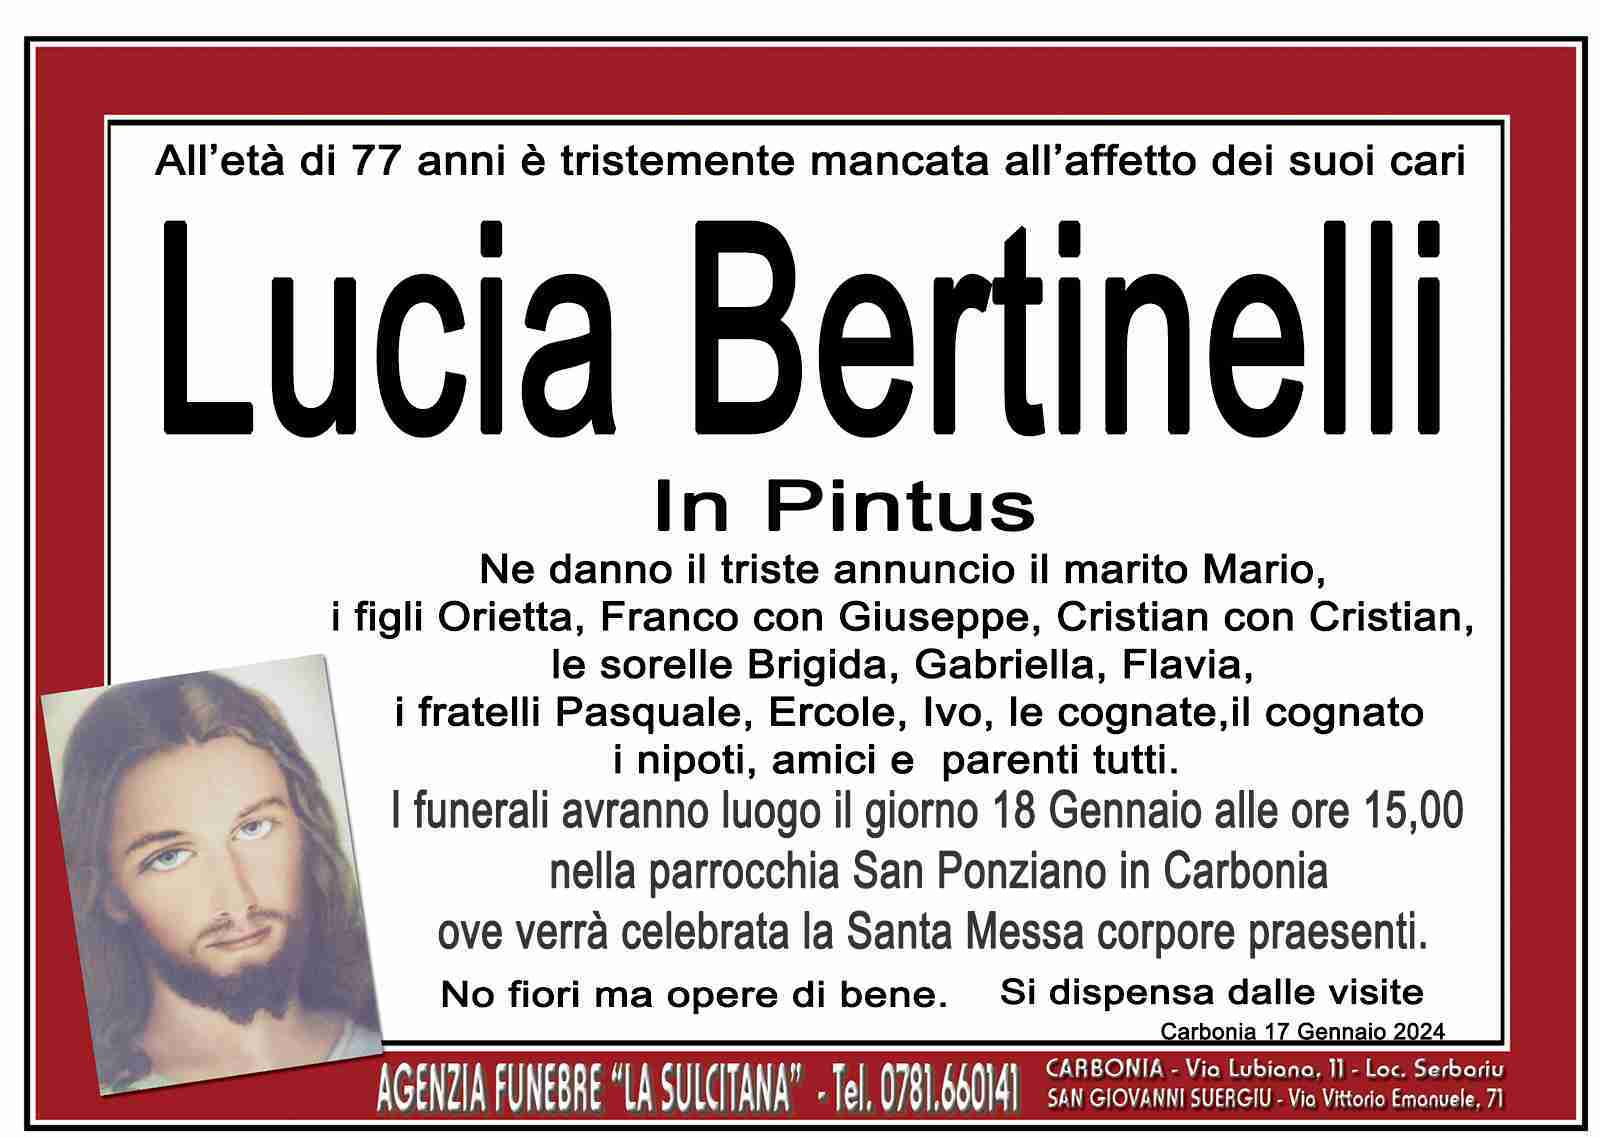 Lucia Bertinelli